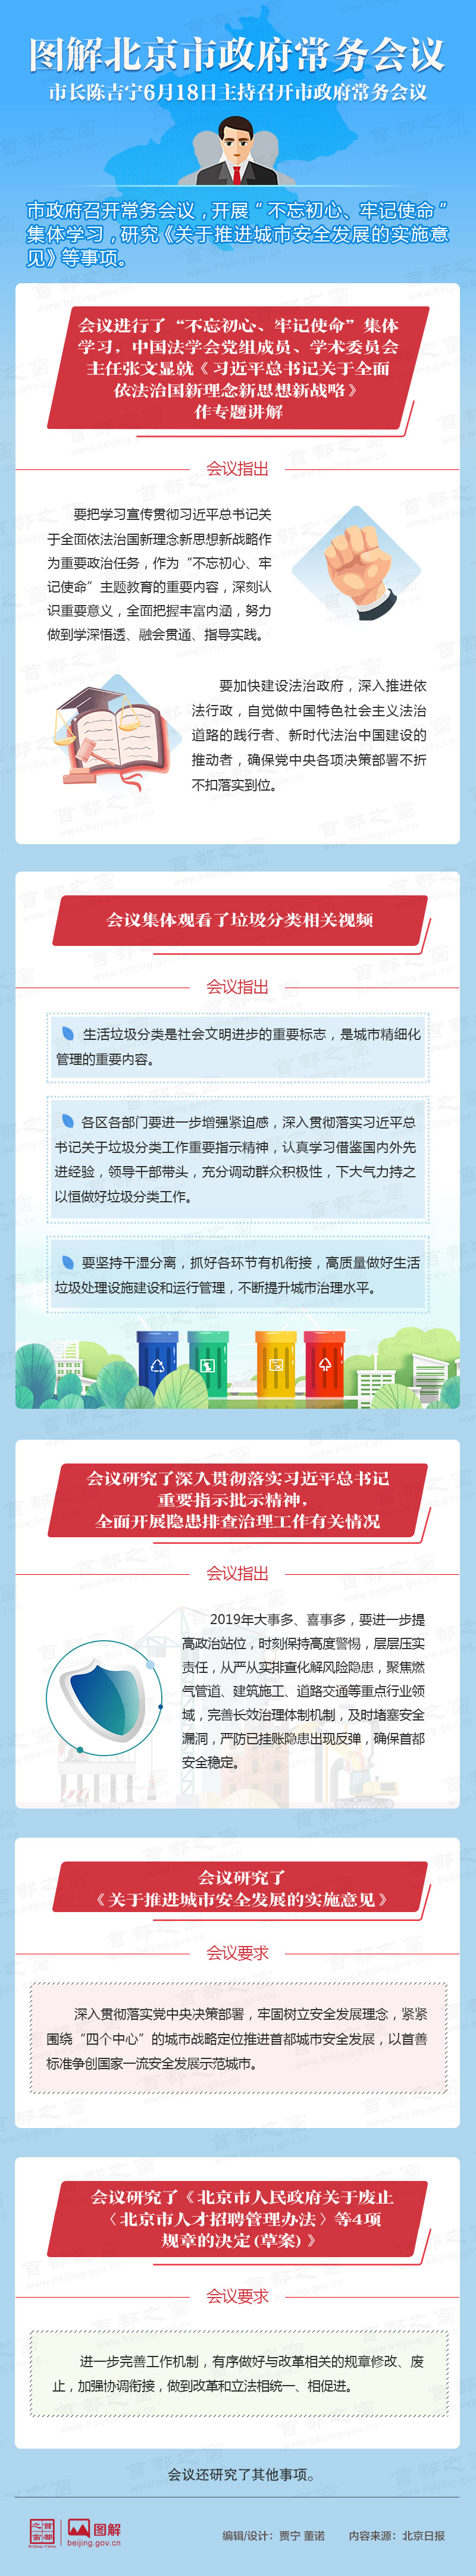 圖解2019年6月18日北京市政府常務會議